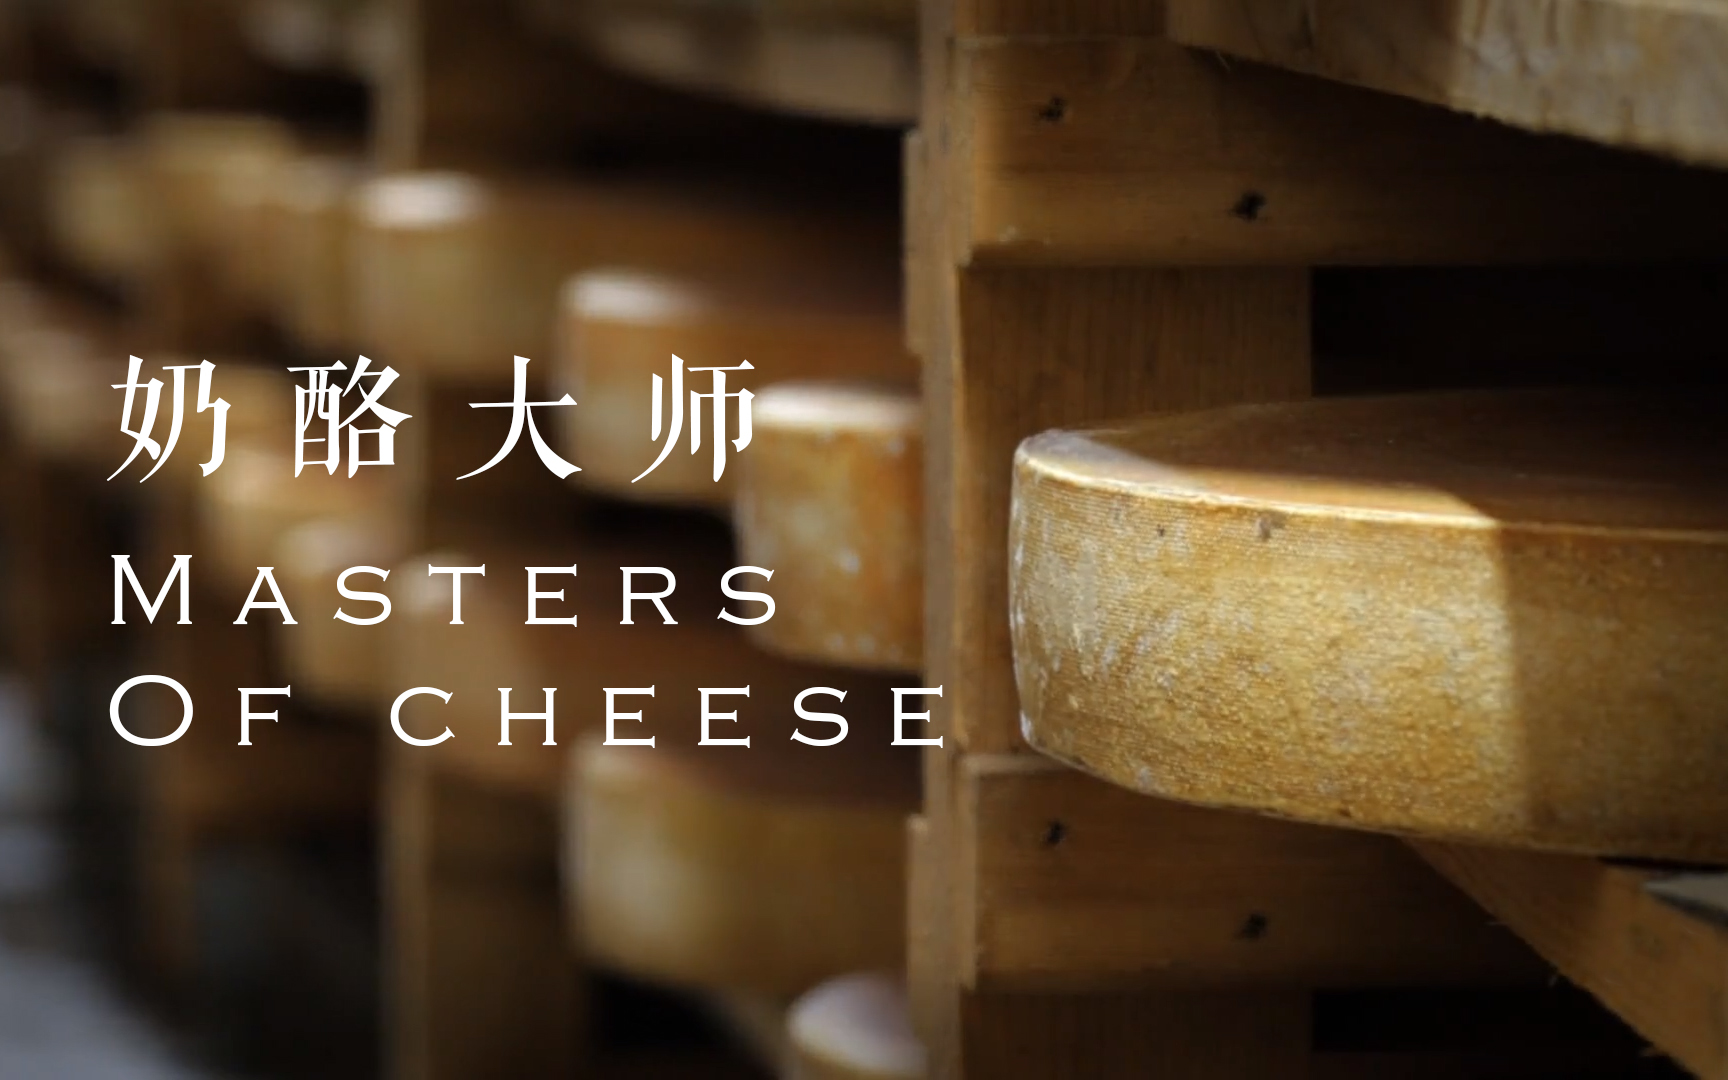 【纪录片】奶酪大师 - Masters of cheese